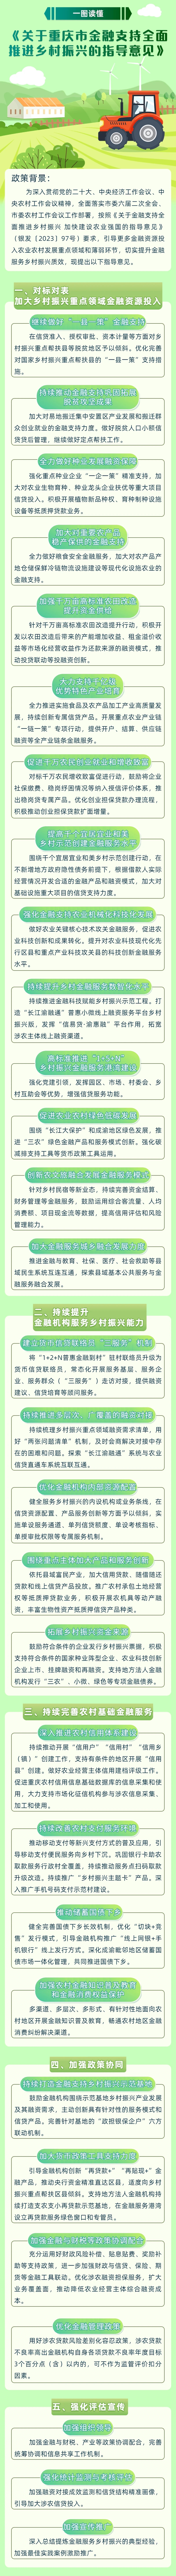 人民银行重庆营业管理部供图。